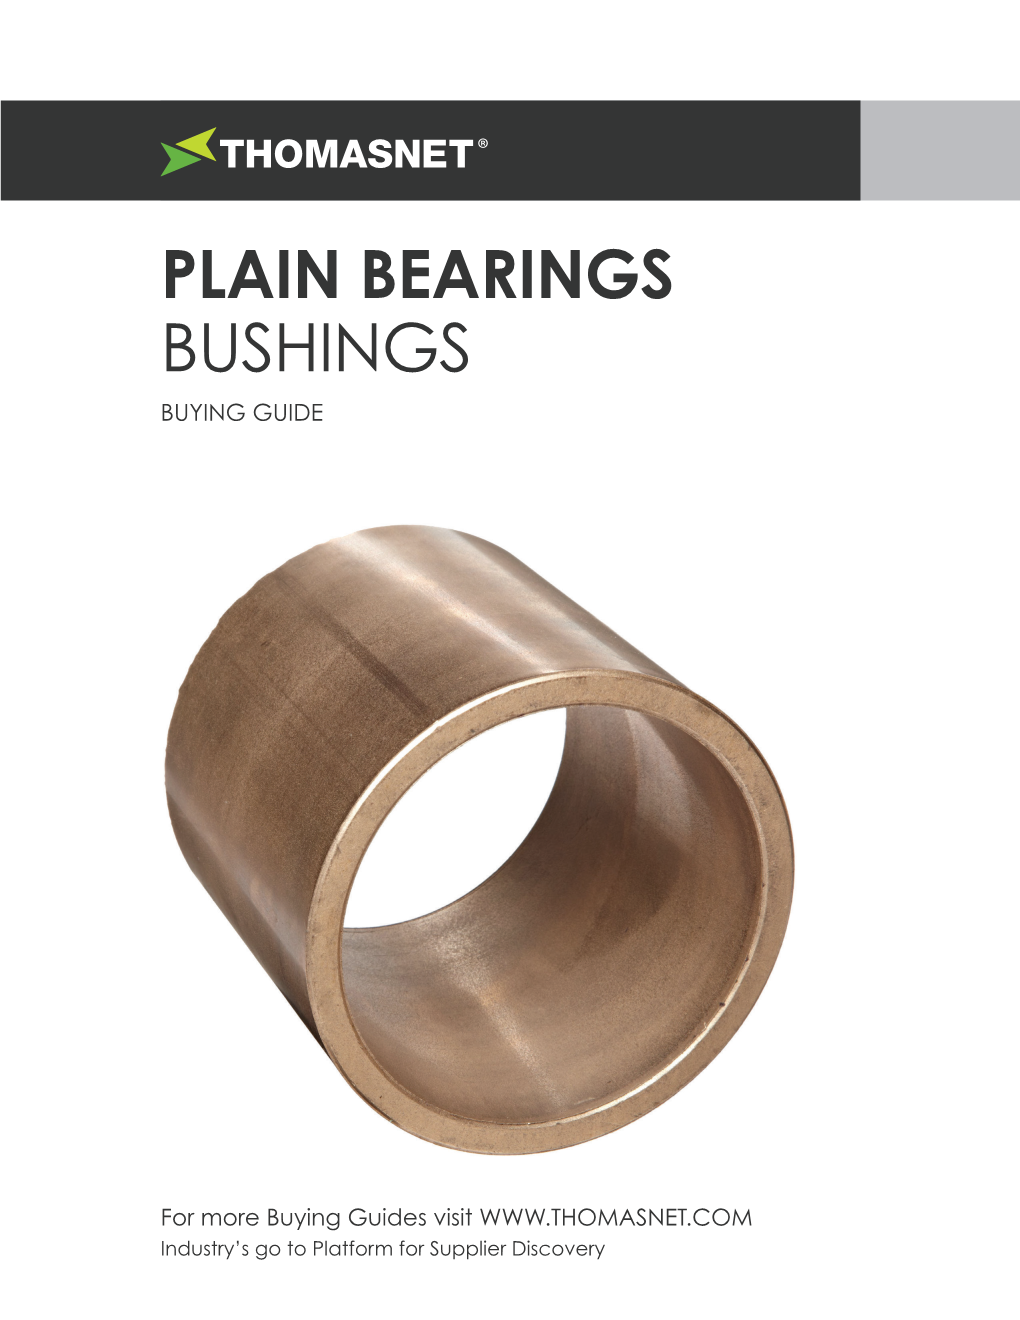 Plain Bearings Bushings Buying Guide